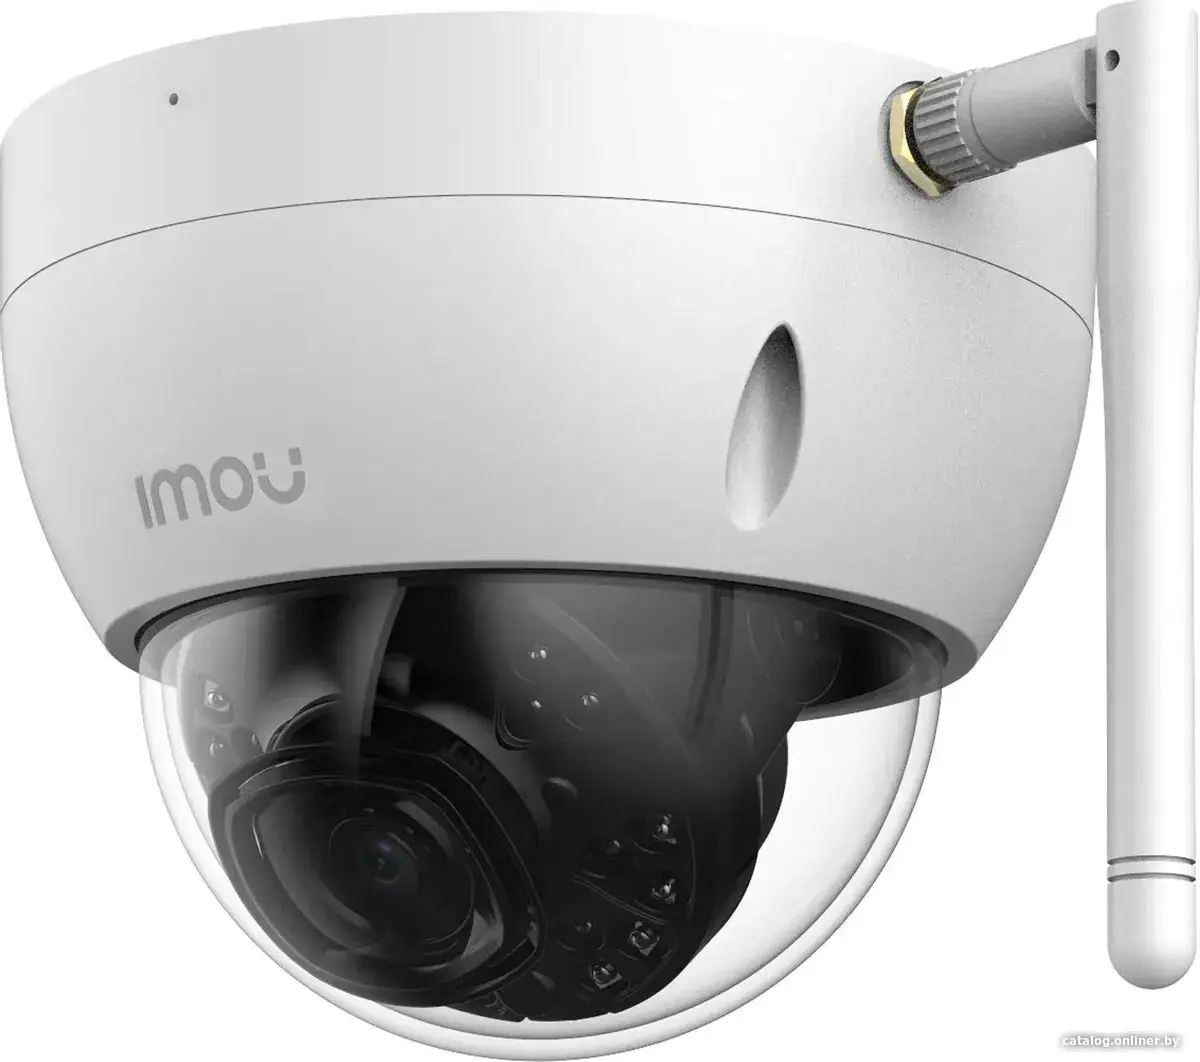 Купить Камера видеонаблюдения IP Imou IPC-D52MIP-0280B-imou 2.8-2.8мм, цена, опт и розница